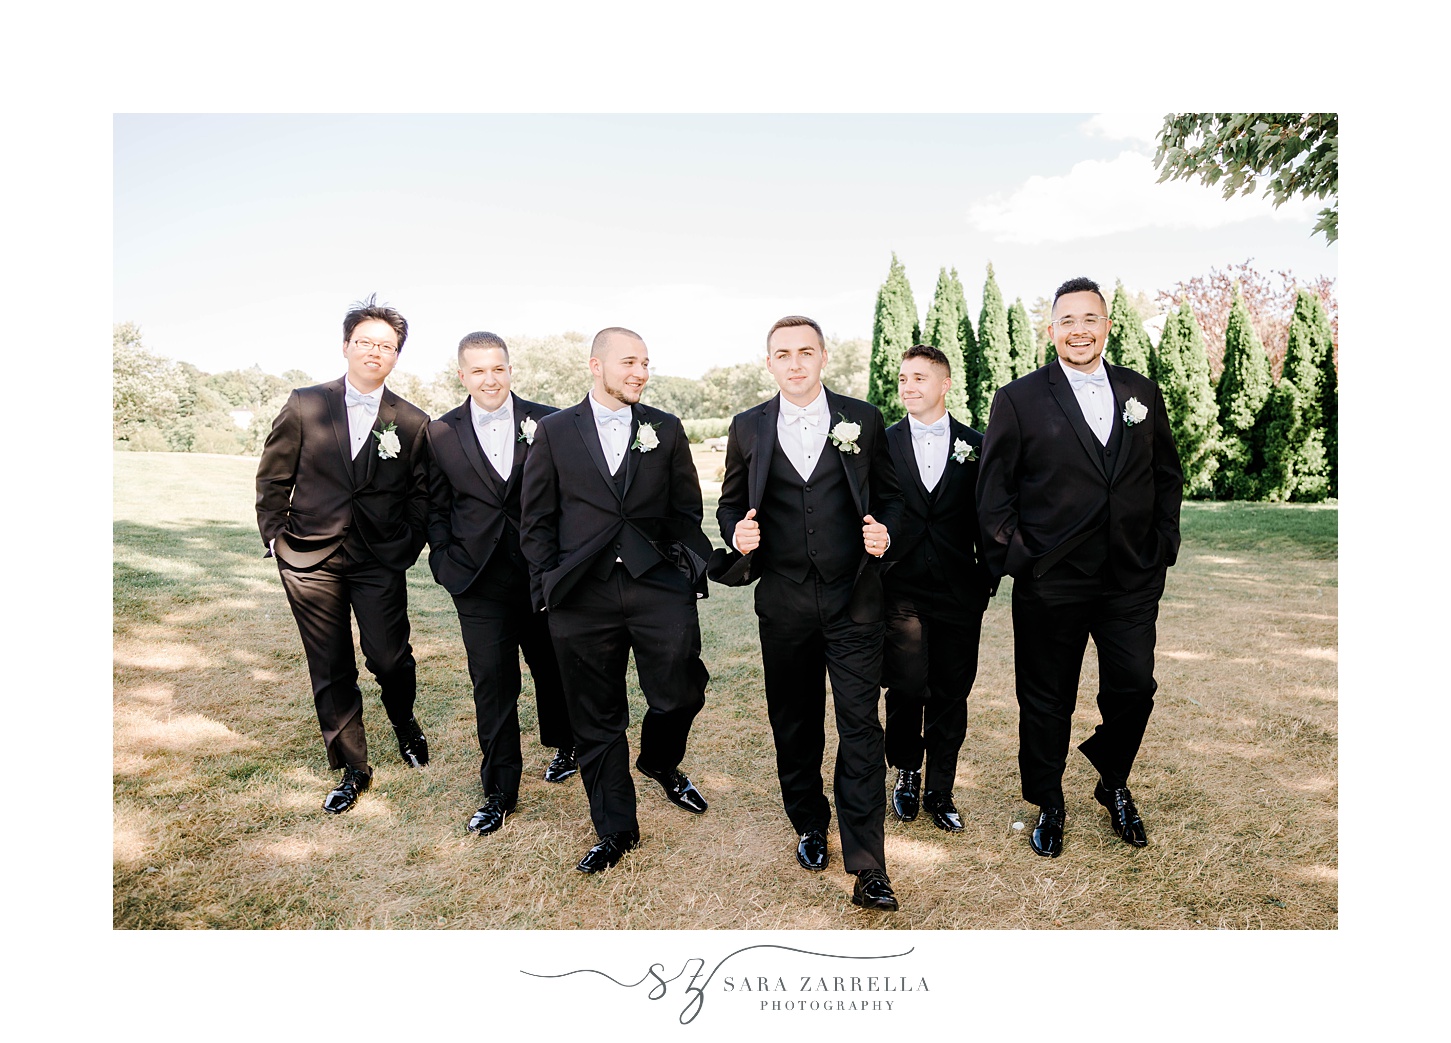 groom walks with groomsmen in black suits with white ties